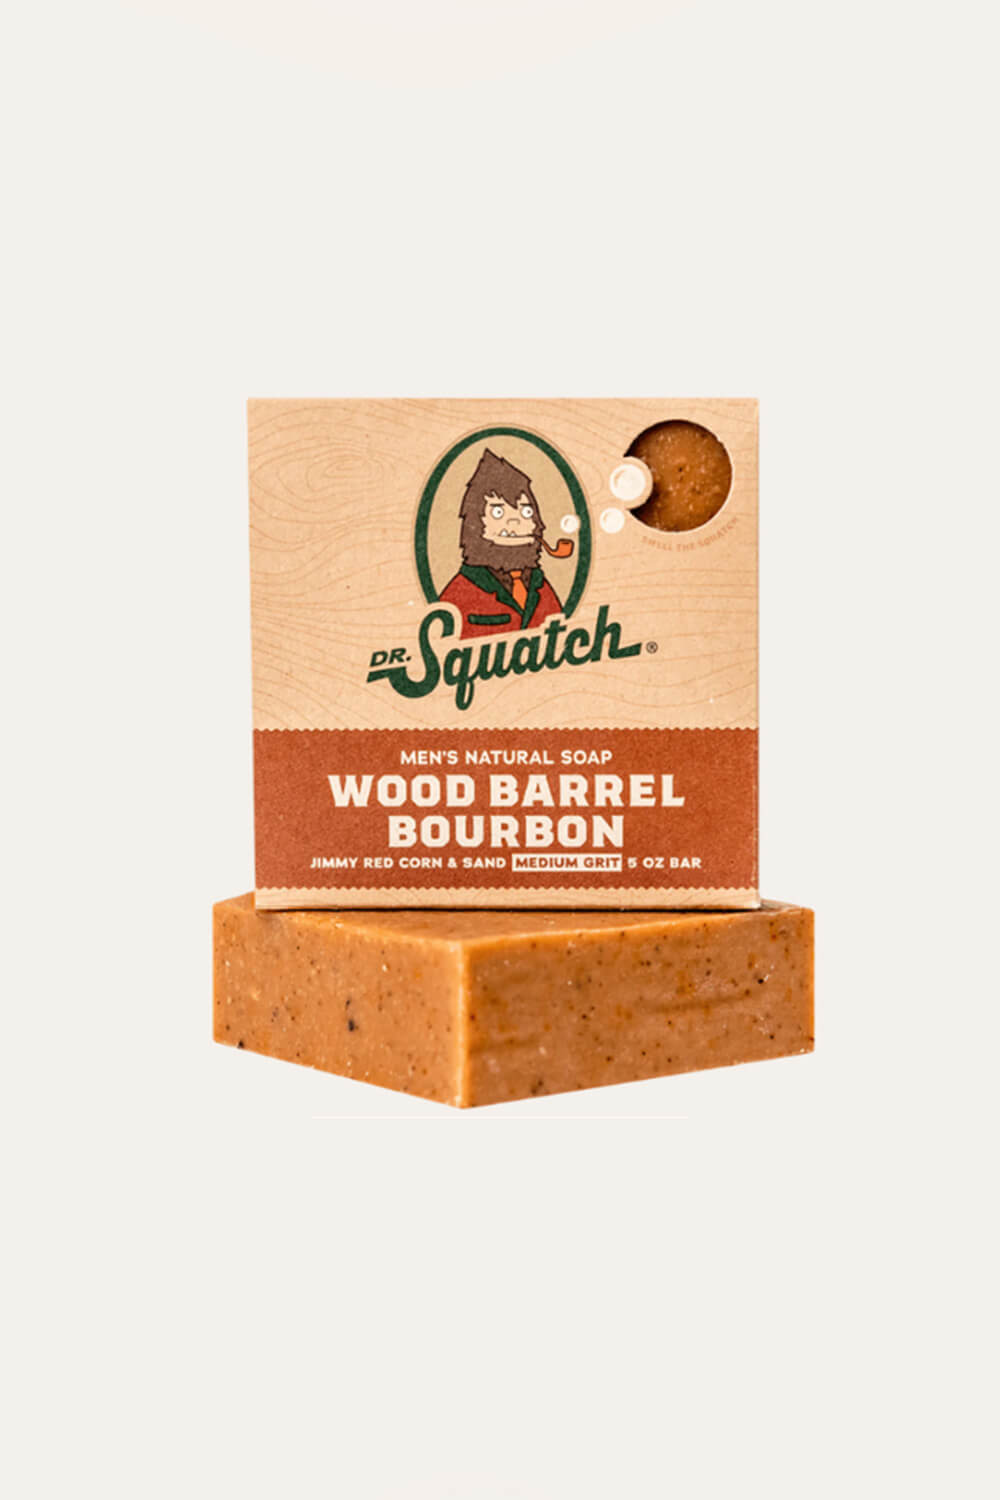 Dr. Squatch's Wood Barrel Bourbon Soap Review